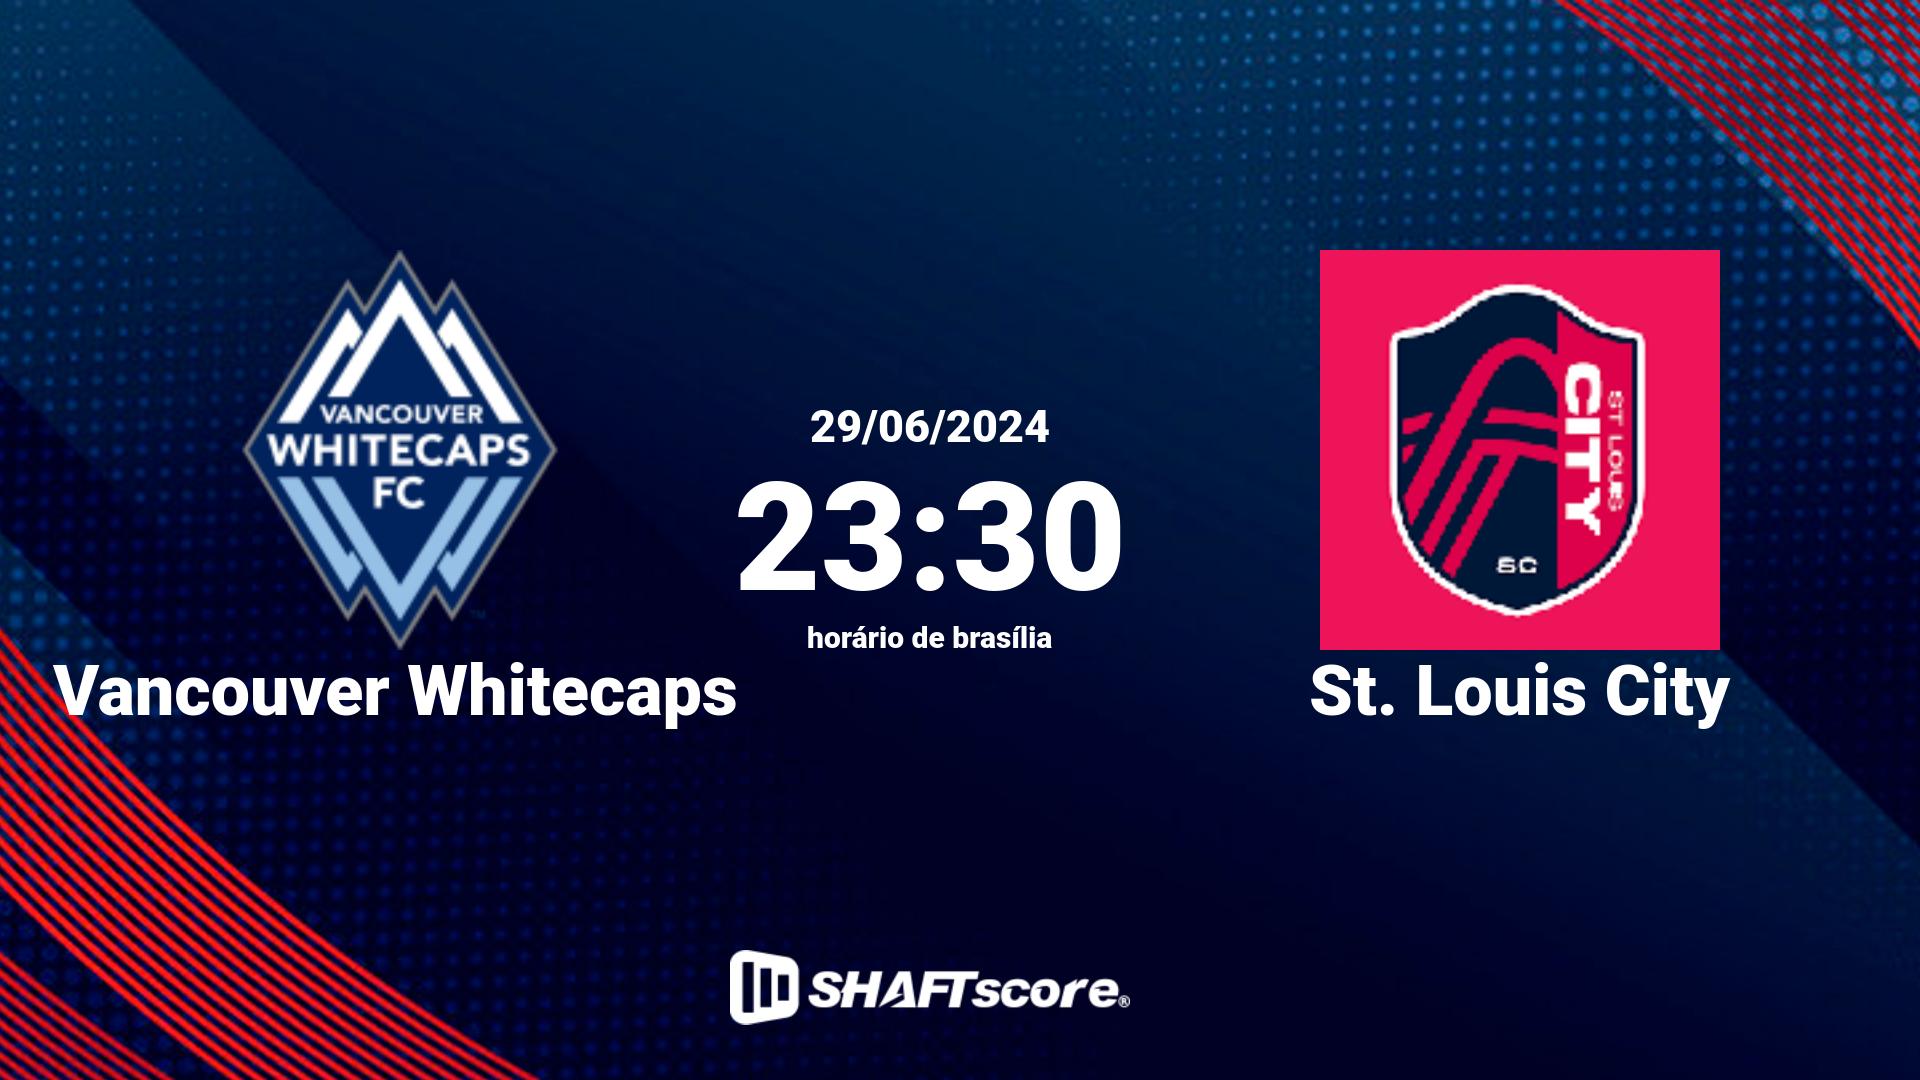 Estatísticas do jogo Vancouver Whitecaps vs St. Louis City 29.06 23:30